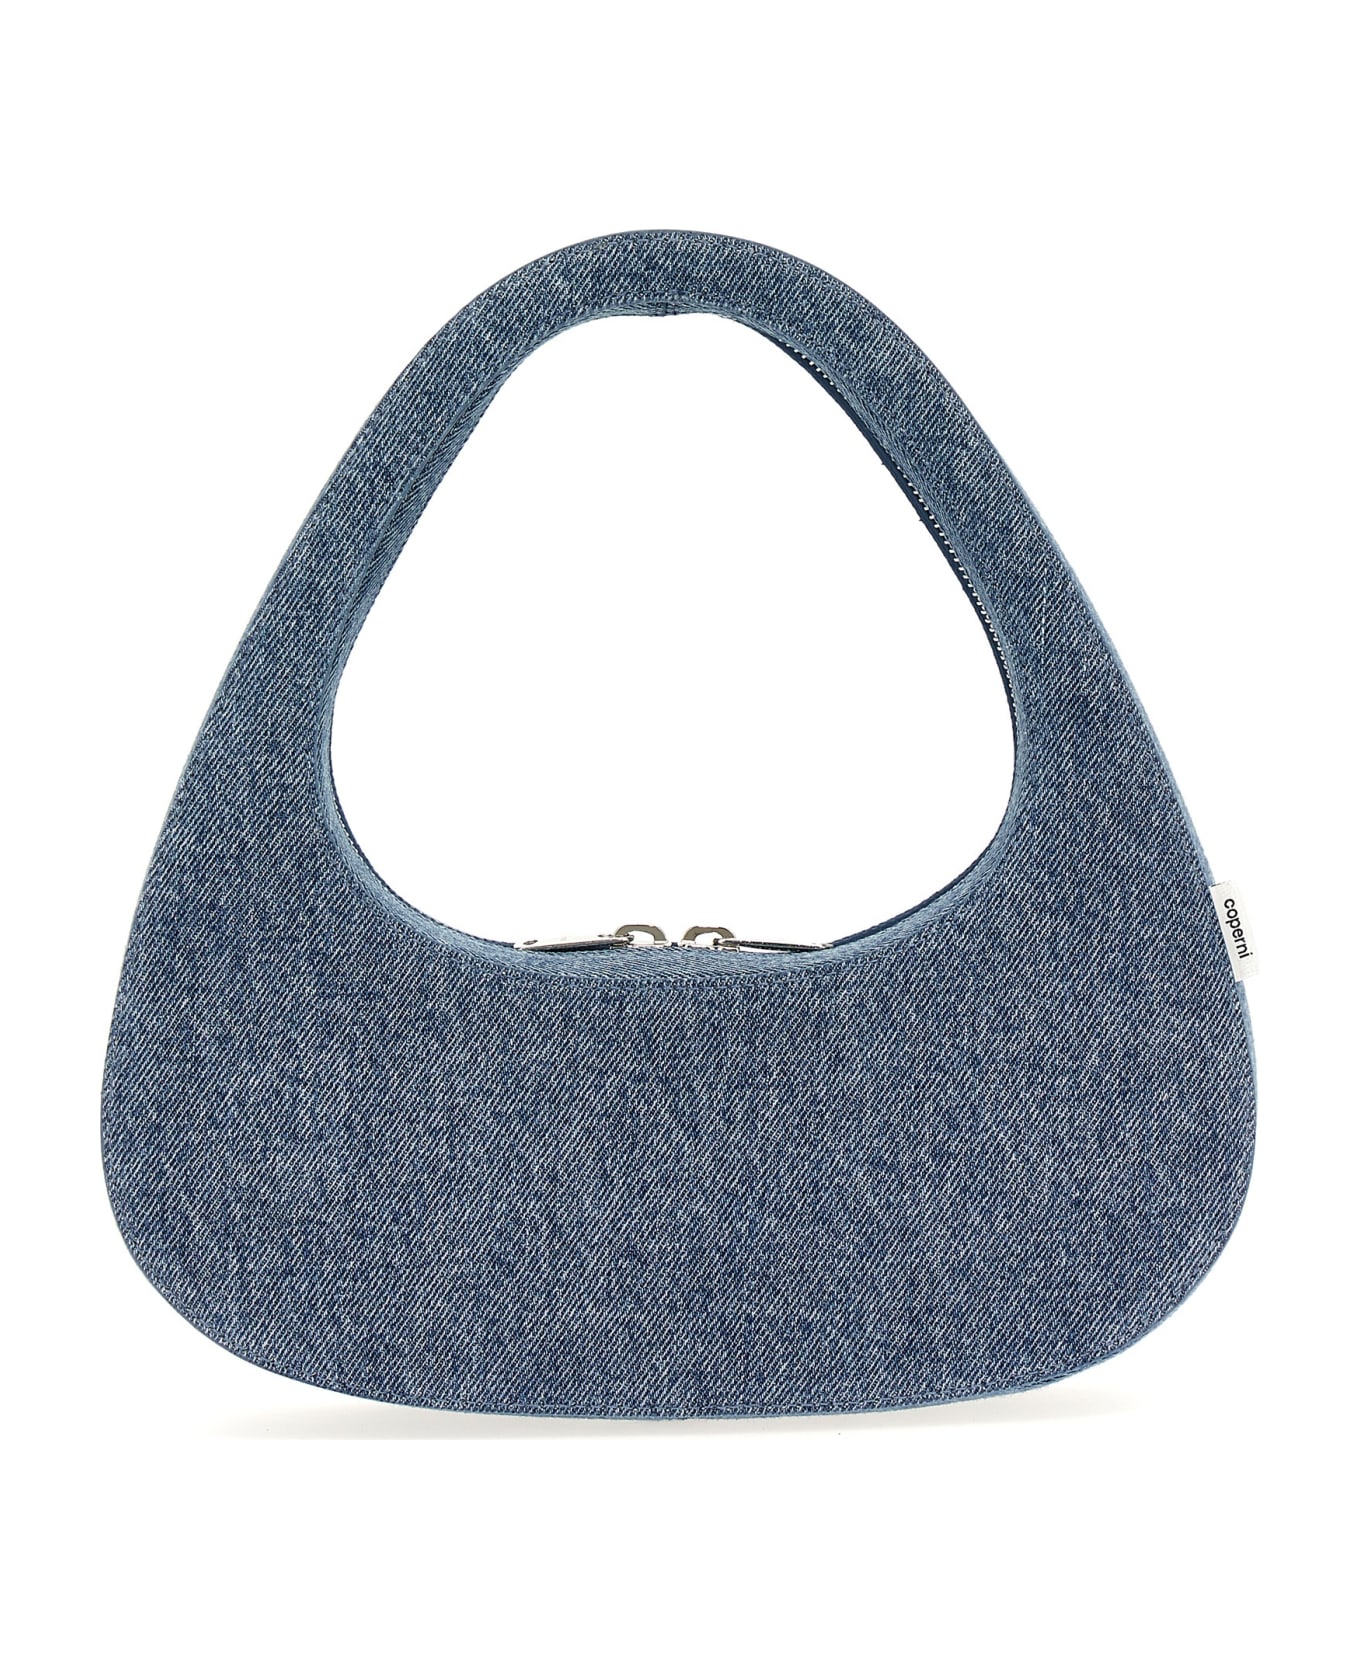 Coperni 'denim Baguette Swipe Bag' Handbag - Light Blue